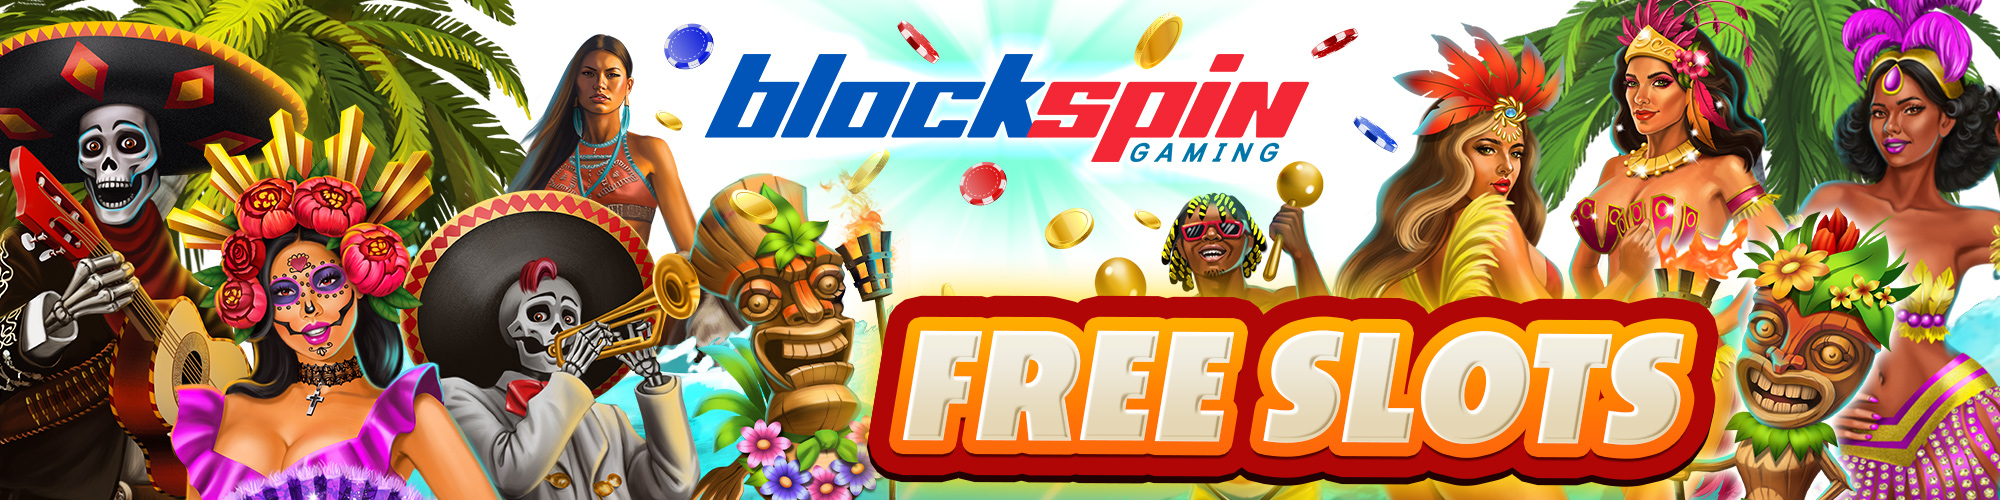 BlockSpinGaming - Free-to-play Social Casino